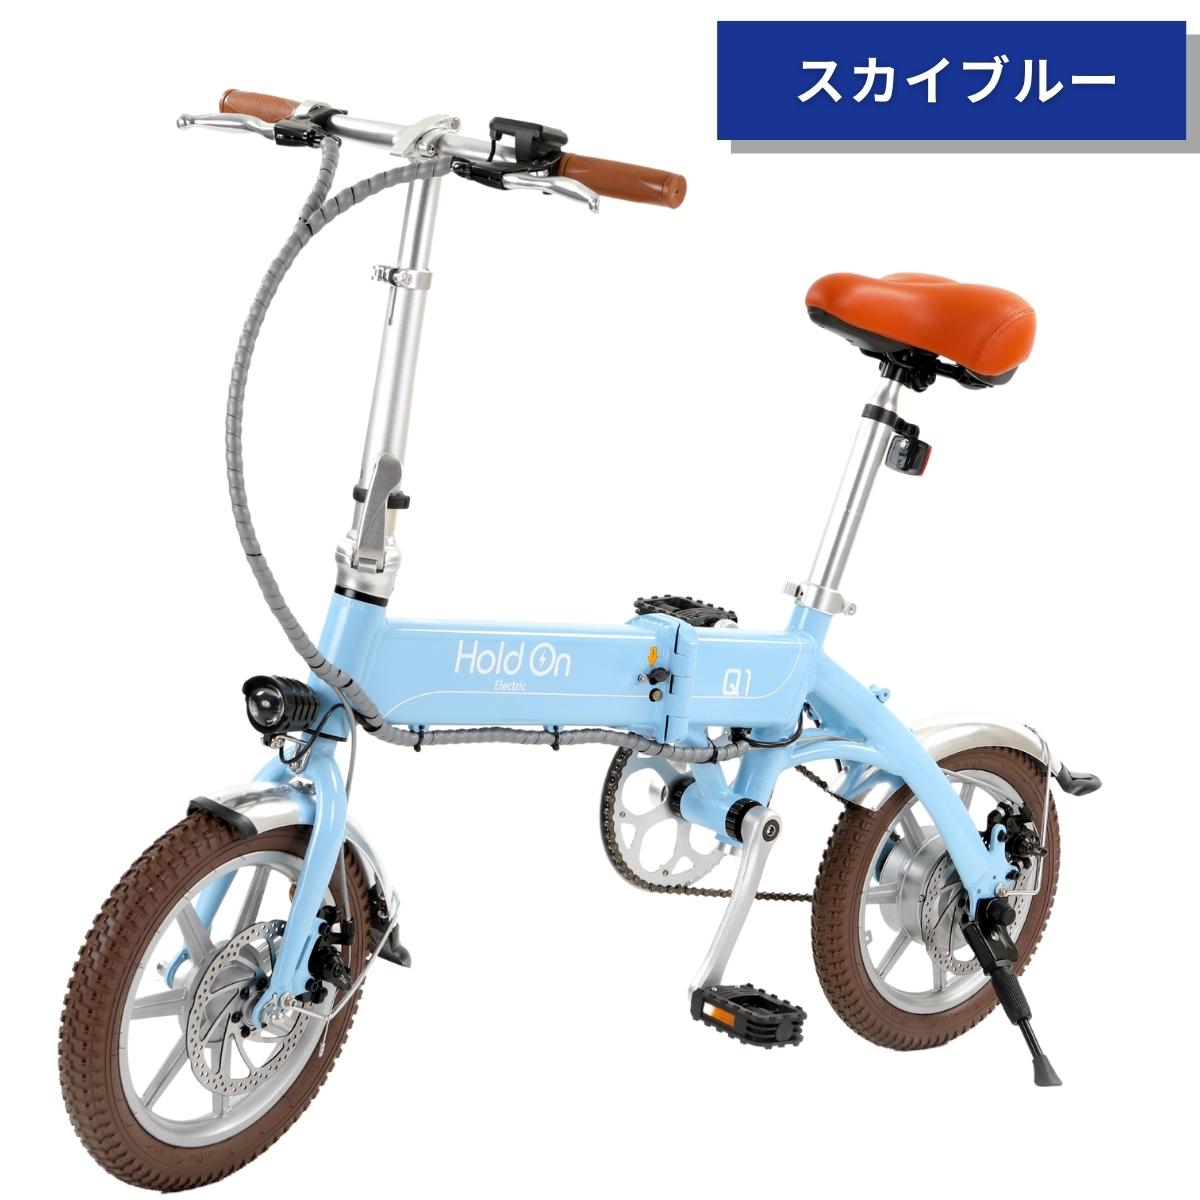 世界の 折りたたみ電動アシスト自転車 hold （新型） 色 ナイトブルー 